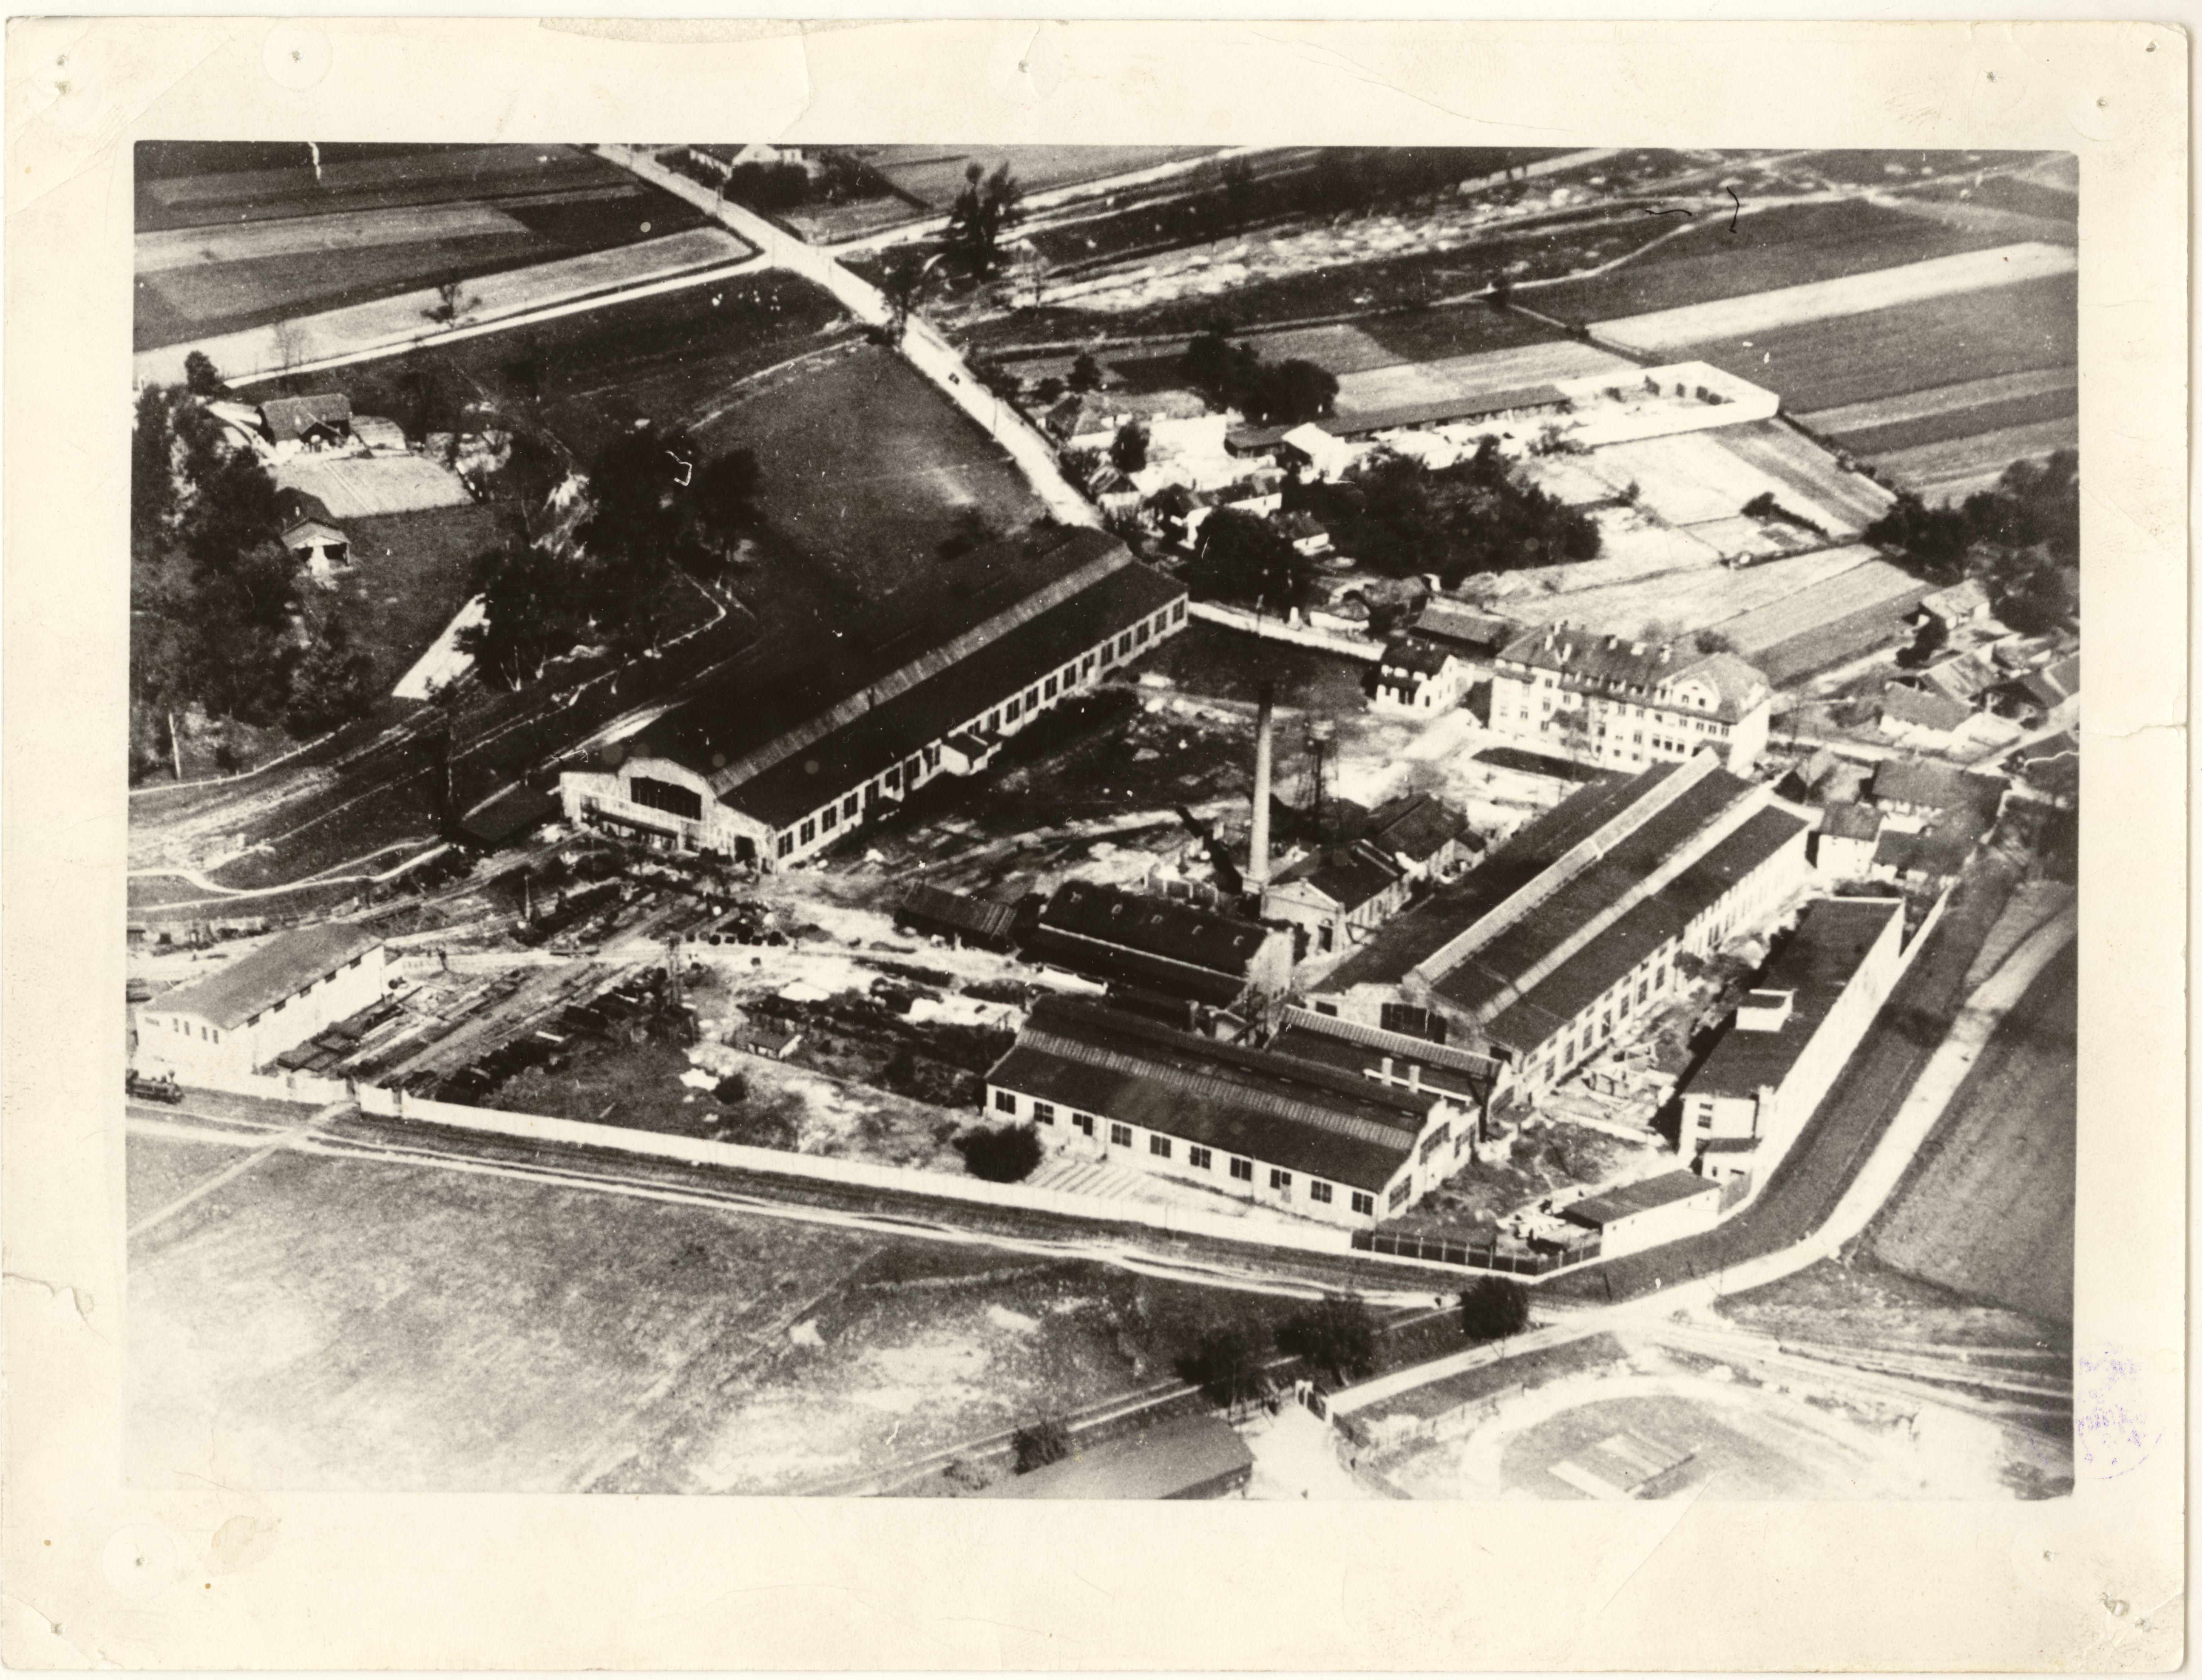 fabryka-maszyn-i-wagonow-l-zieleniewski-fotografia-lotnicza-autor-fot-nieznany-okolo-1920